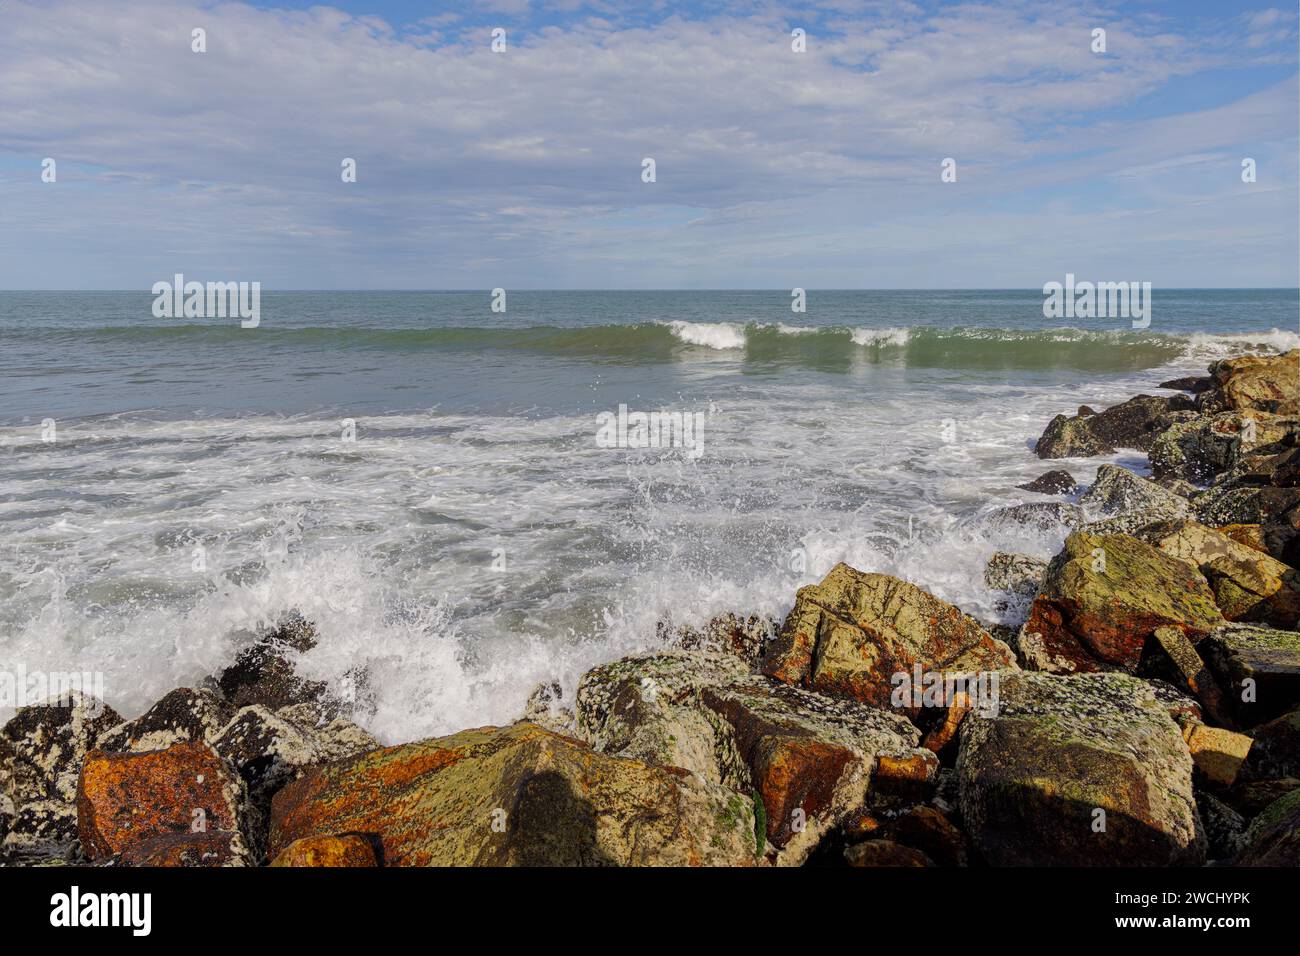 Waves crashing against the rocks on the coast. Stock Photo